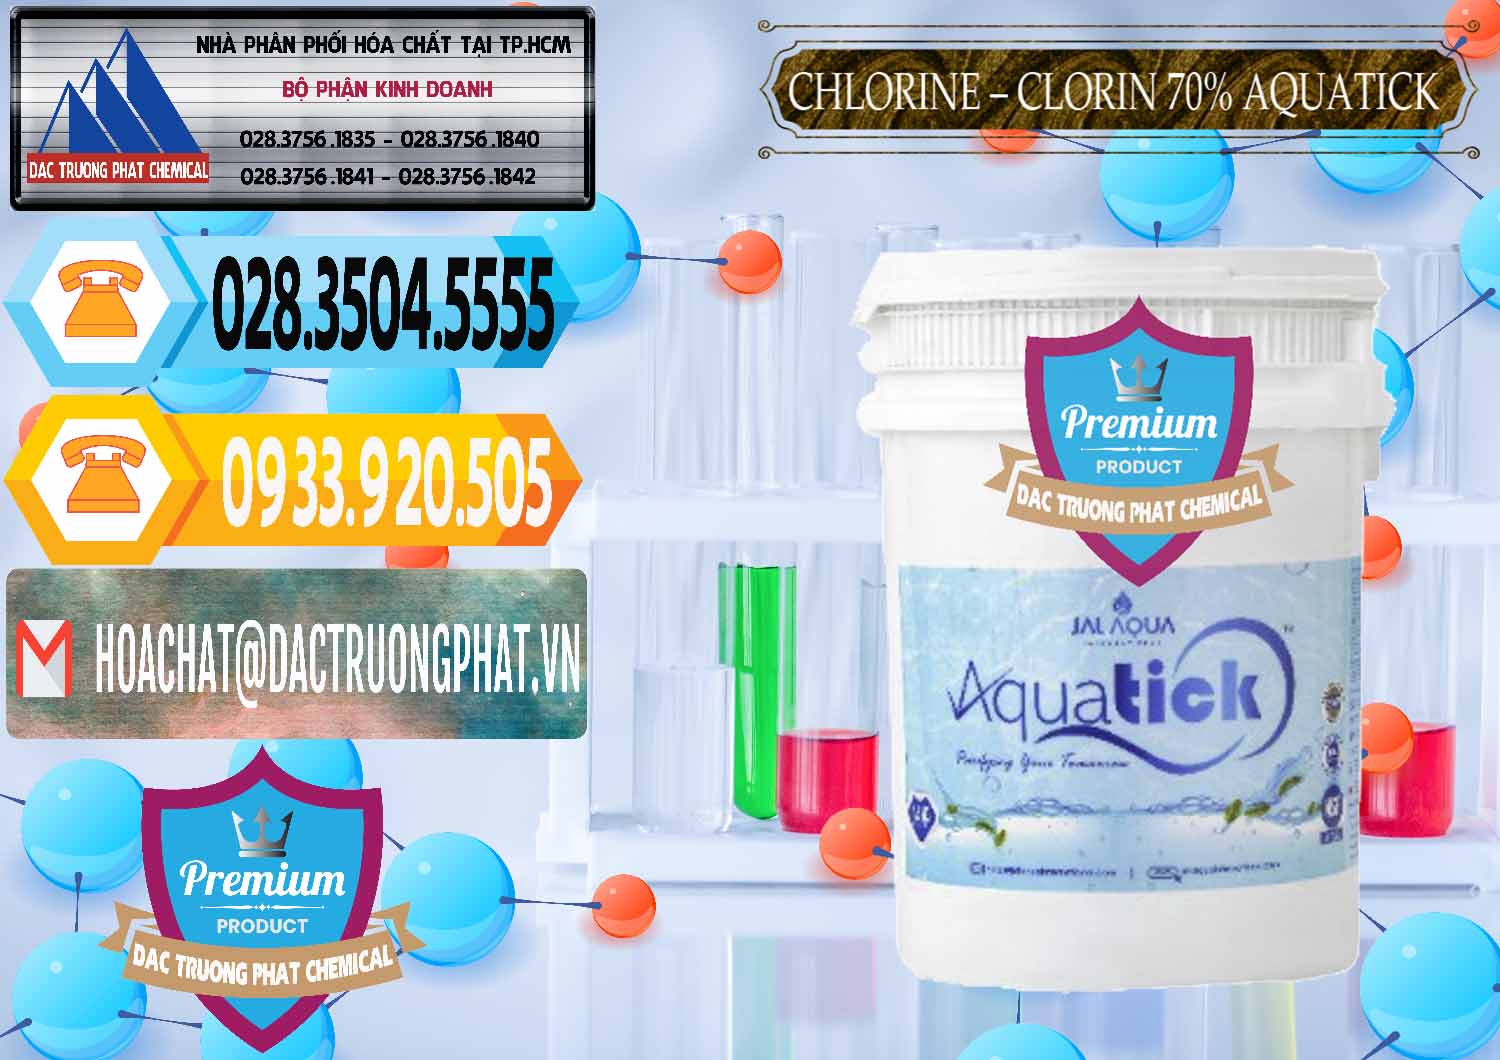 Công ty bán & cung ứng Chlorine – Clorin 70% Aquatick Thùng Cao Jal Aqua Ấn Độ India - 0237 - Phân phối - cung ứng hóa chất tại TP.HCM - hoachattayrua.net